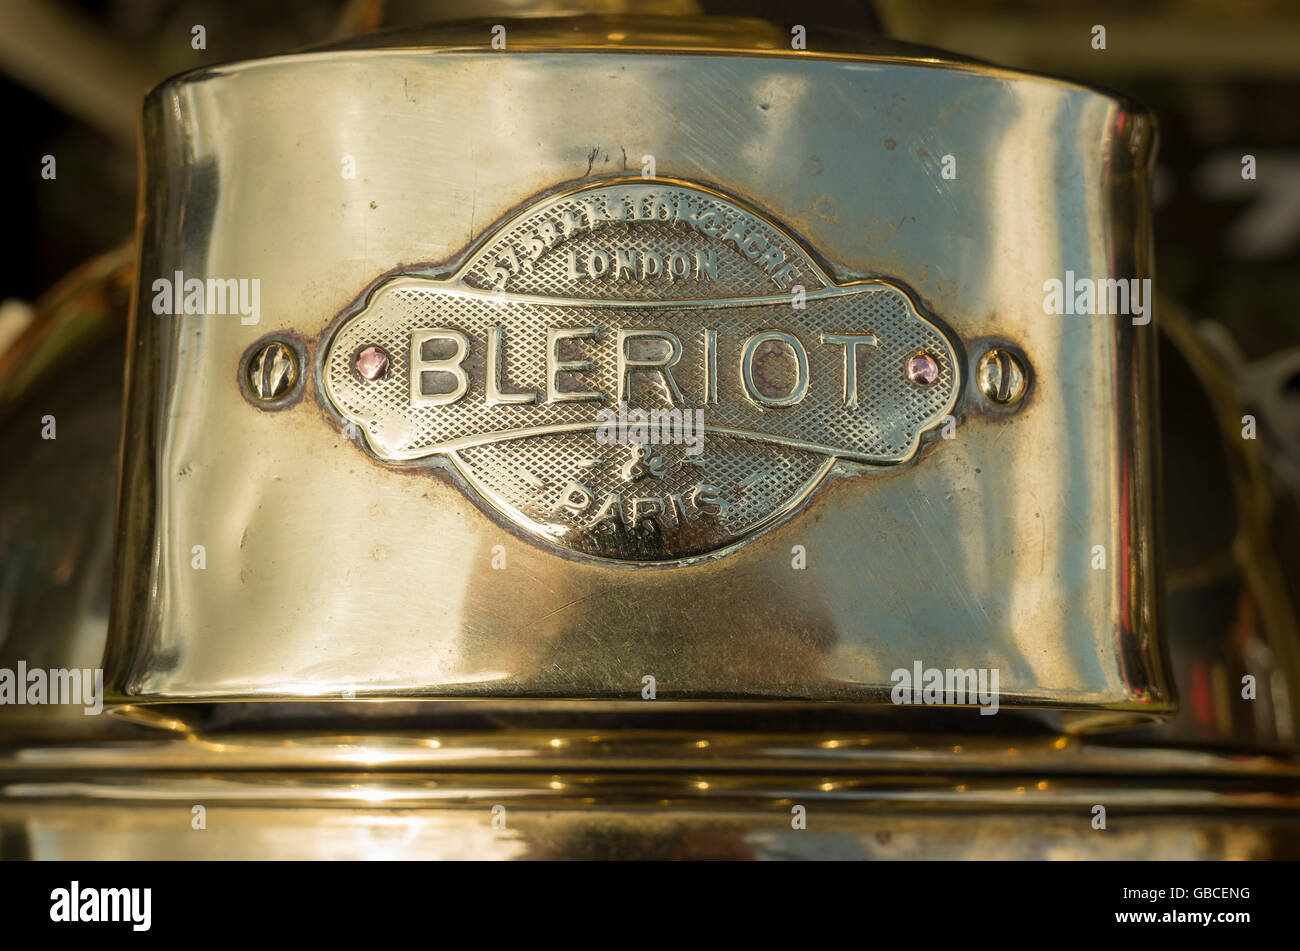 Blériot est un nom plus souvent associée avec aaviation. Ici elle apparaît sur un 100 ans monté sur une lampe à huile Belsize automobi Banque D'Images